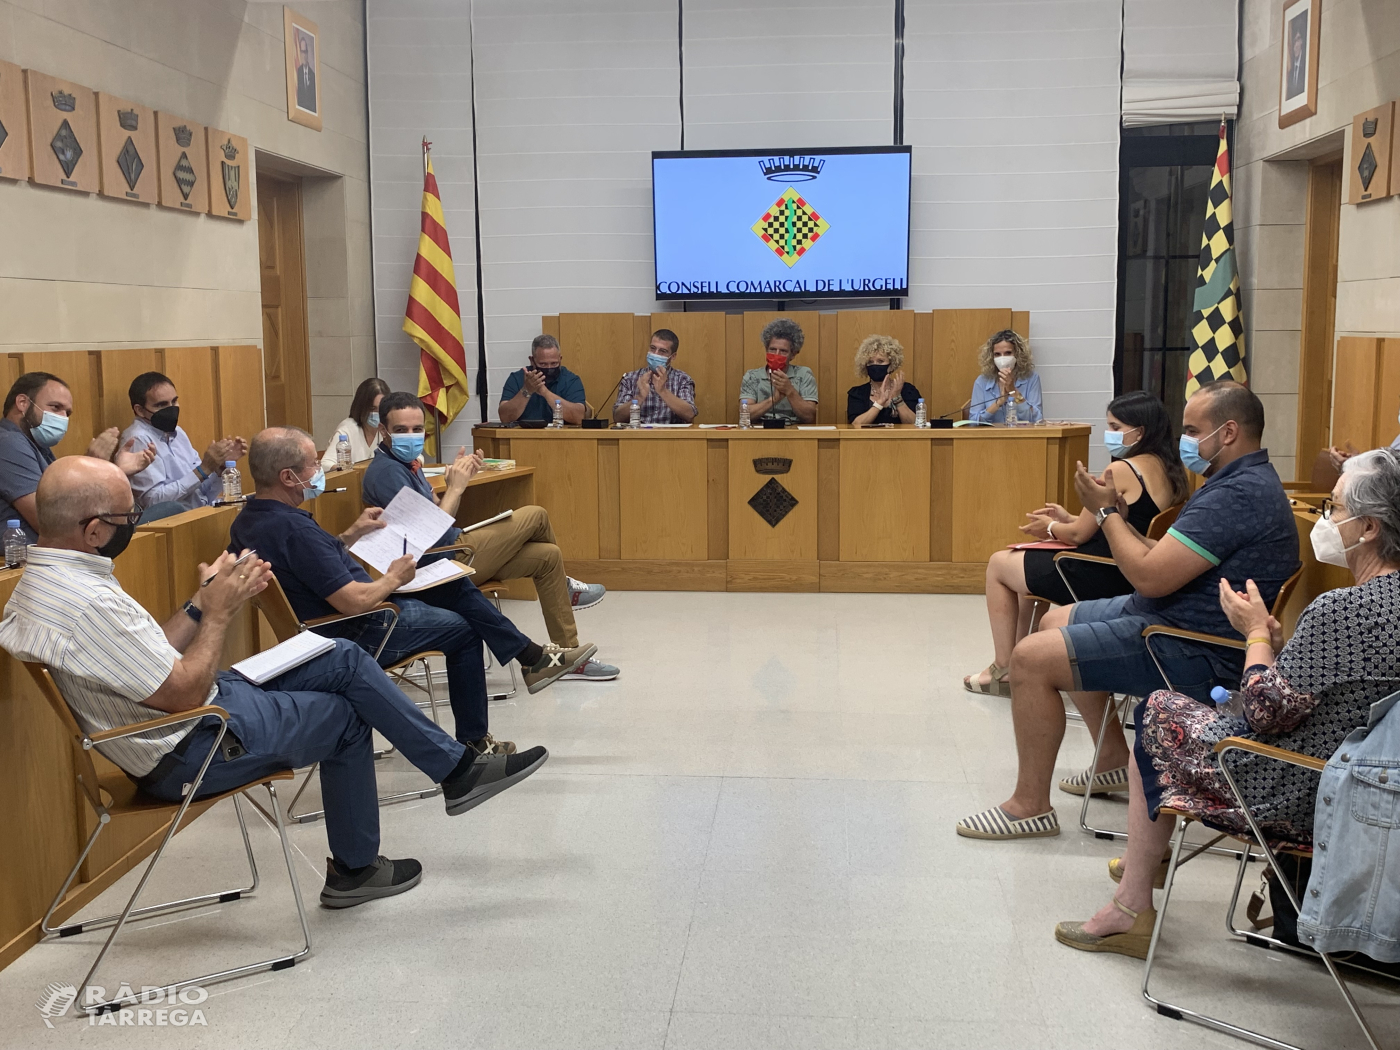 El Plenari del Consell Comarcal de l'Urgell es reuneix de forma presencial després d’un any de sessions telemàtiques